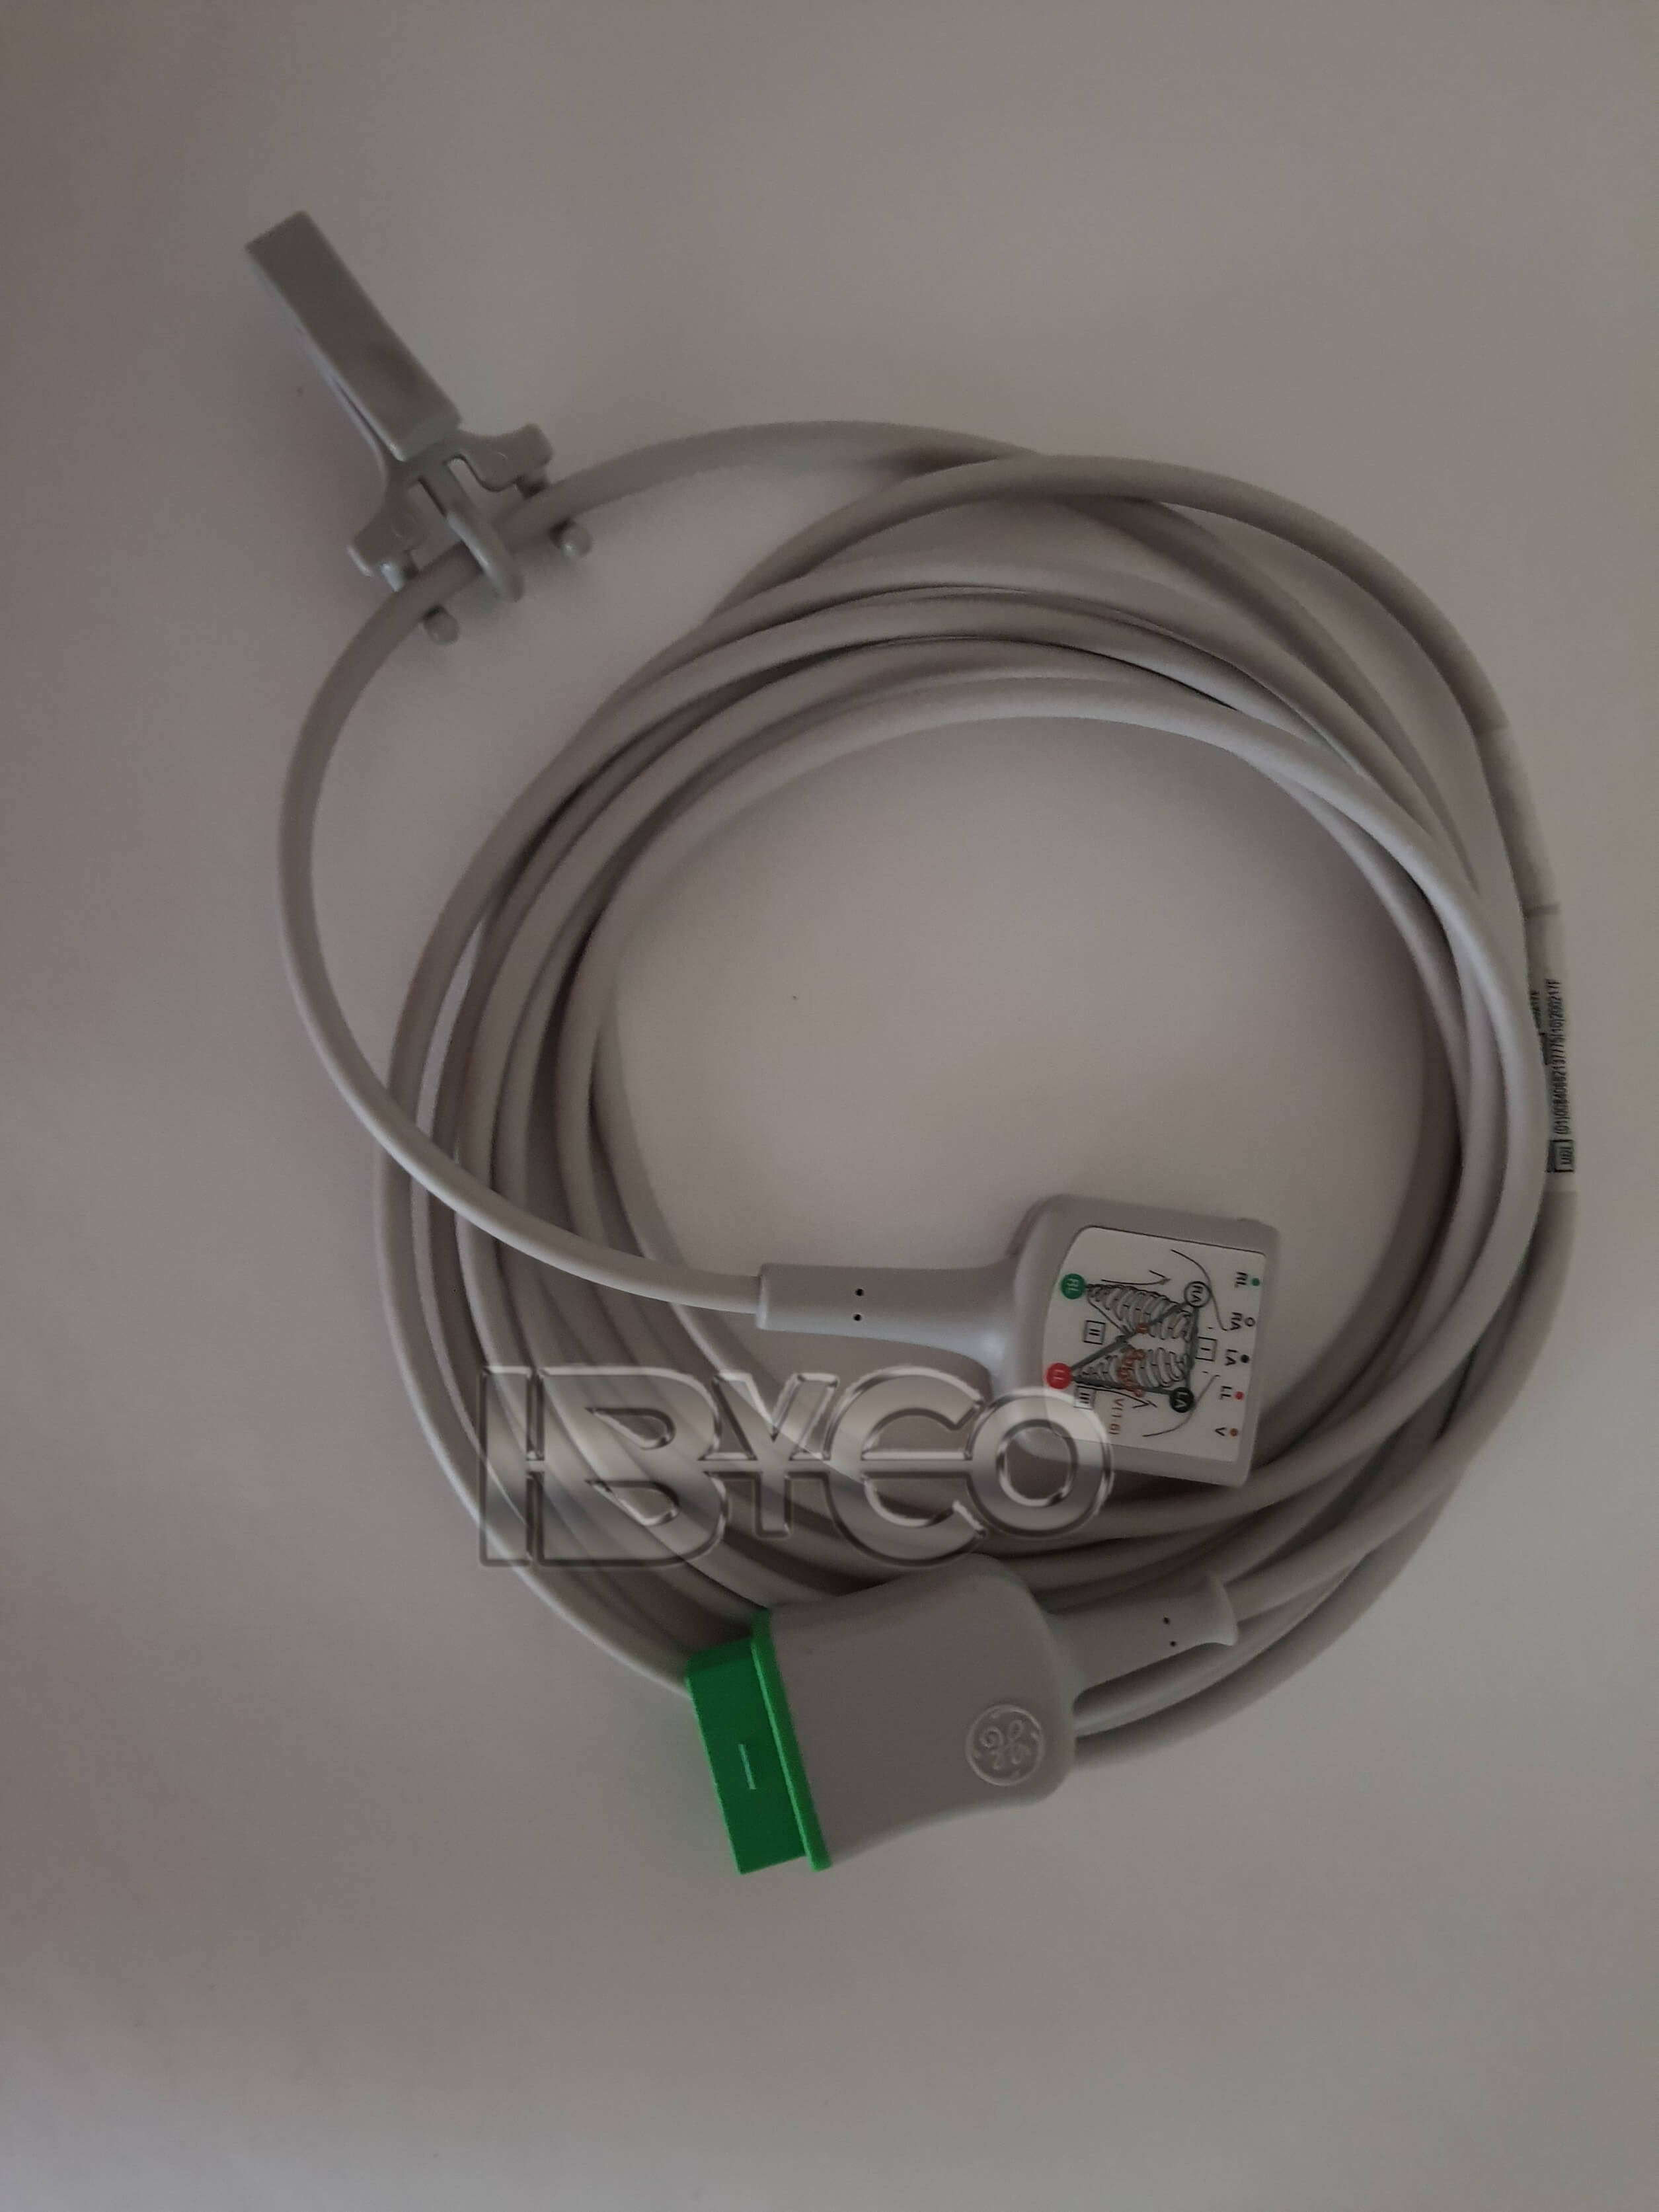 2017003-001 / 2106305-001 - Cable troncal de ECG de 3/5 derivaciones